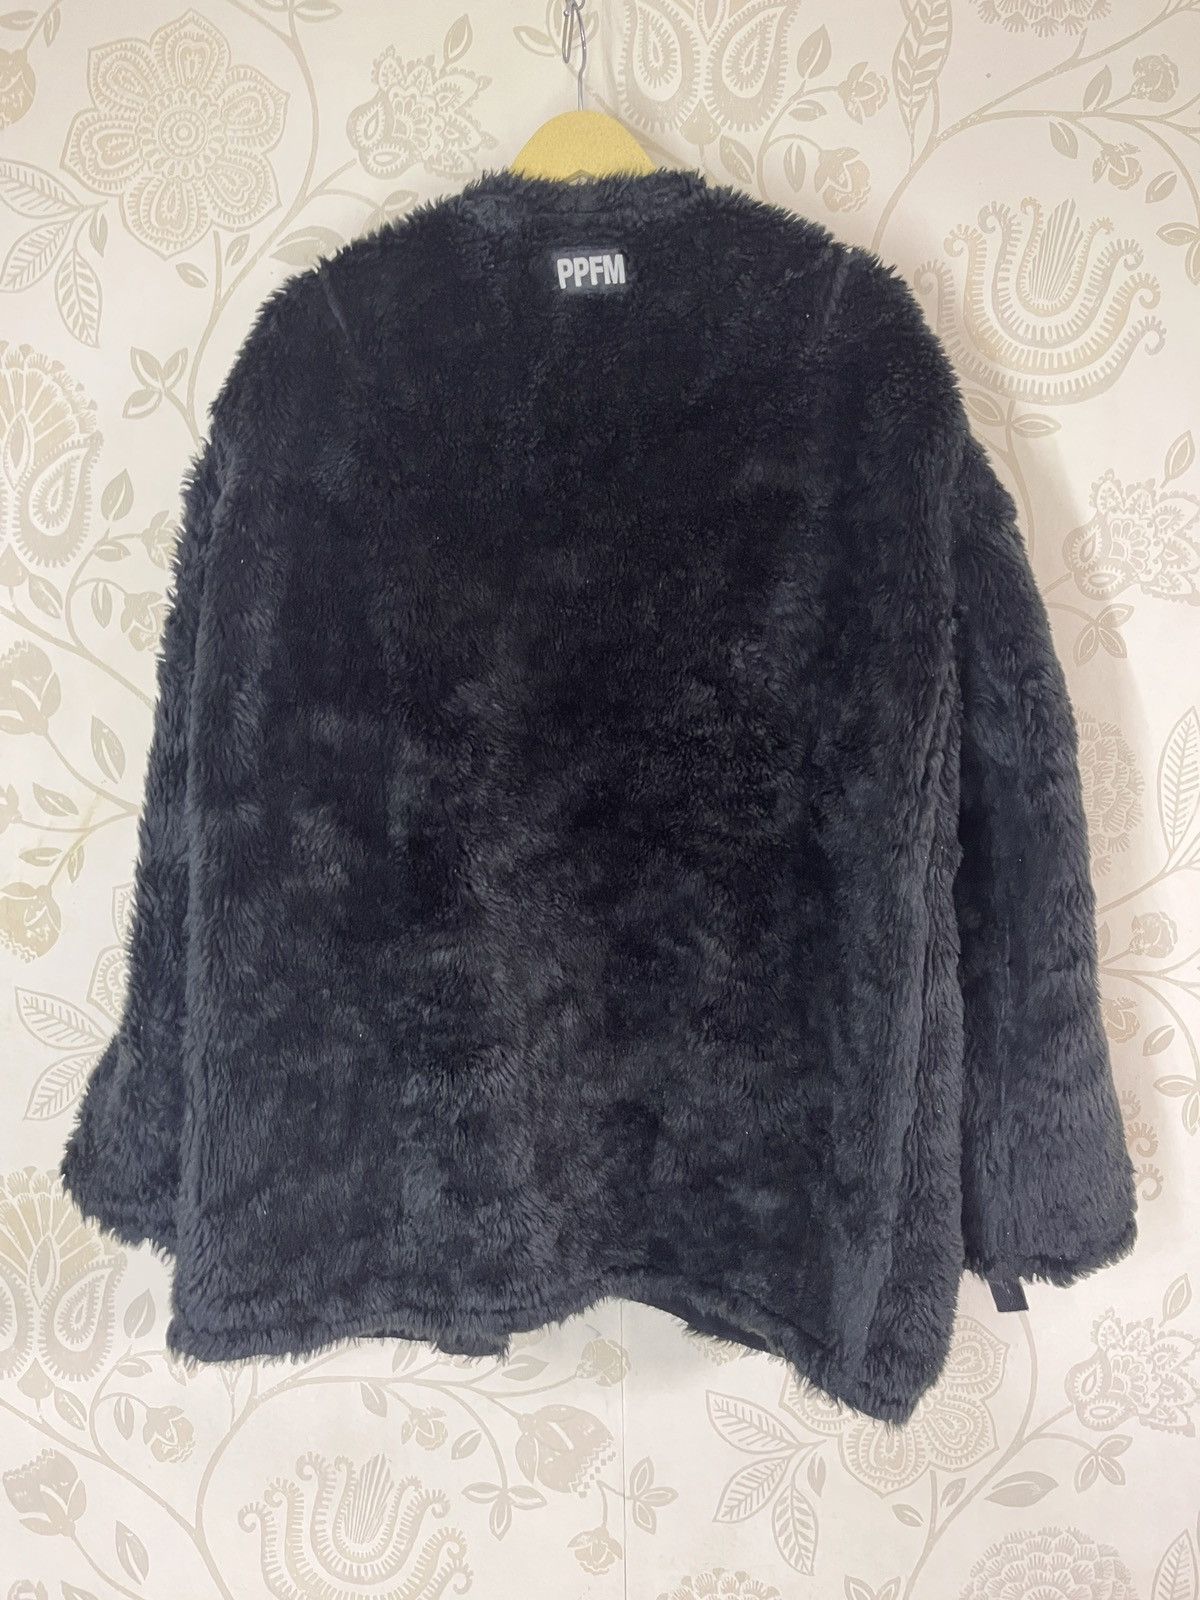 Vintage - Lux Style Black Fur PPFM Cloaks Capes - 2